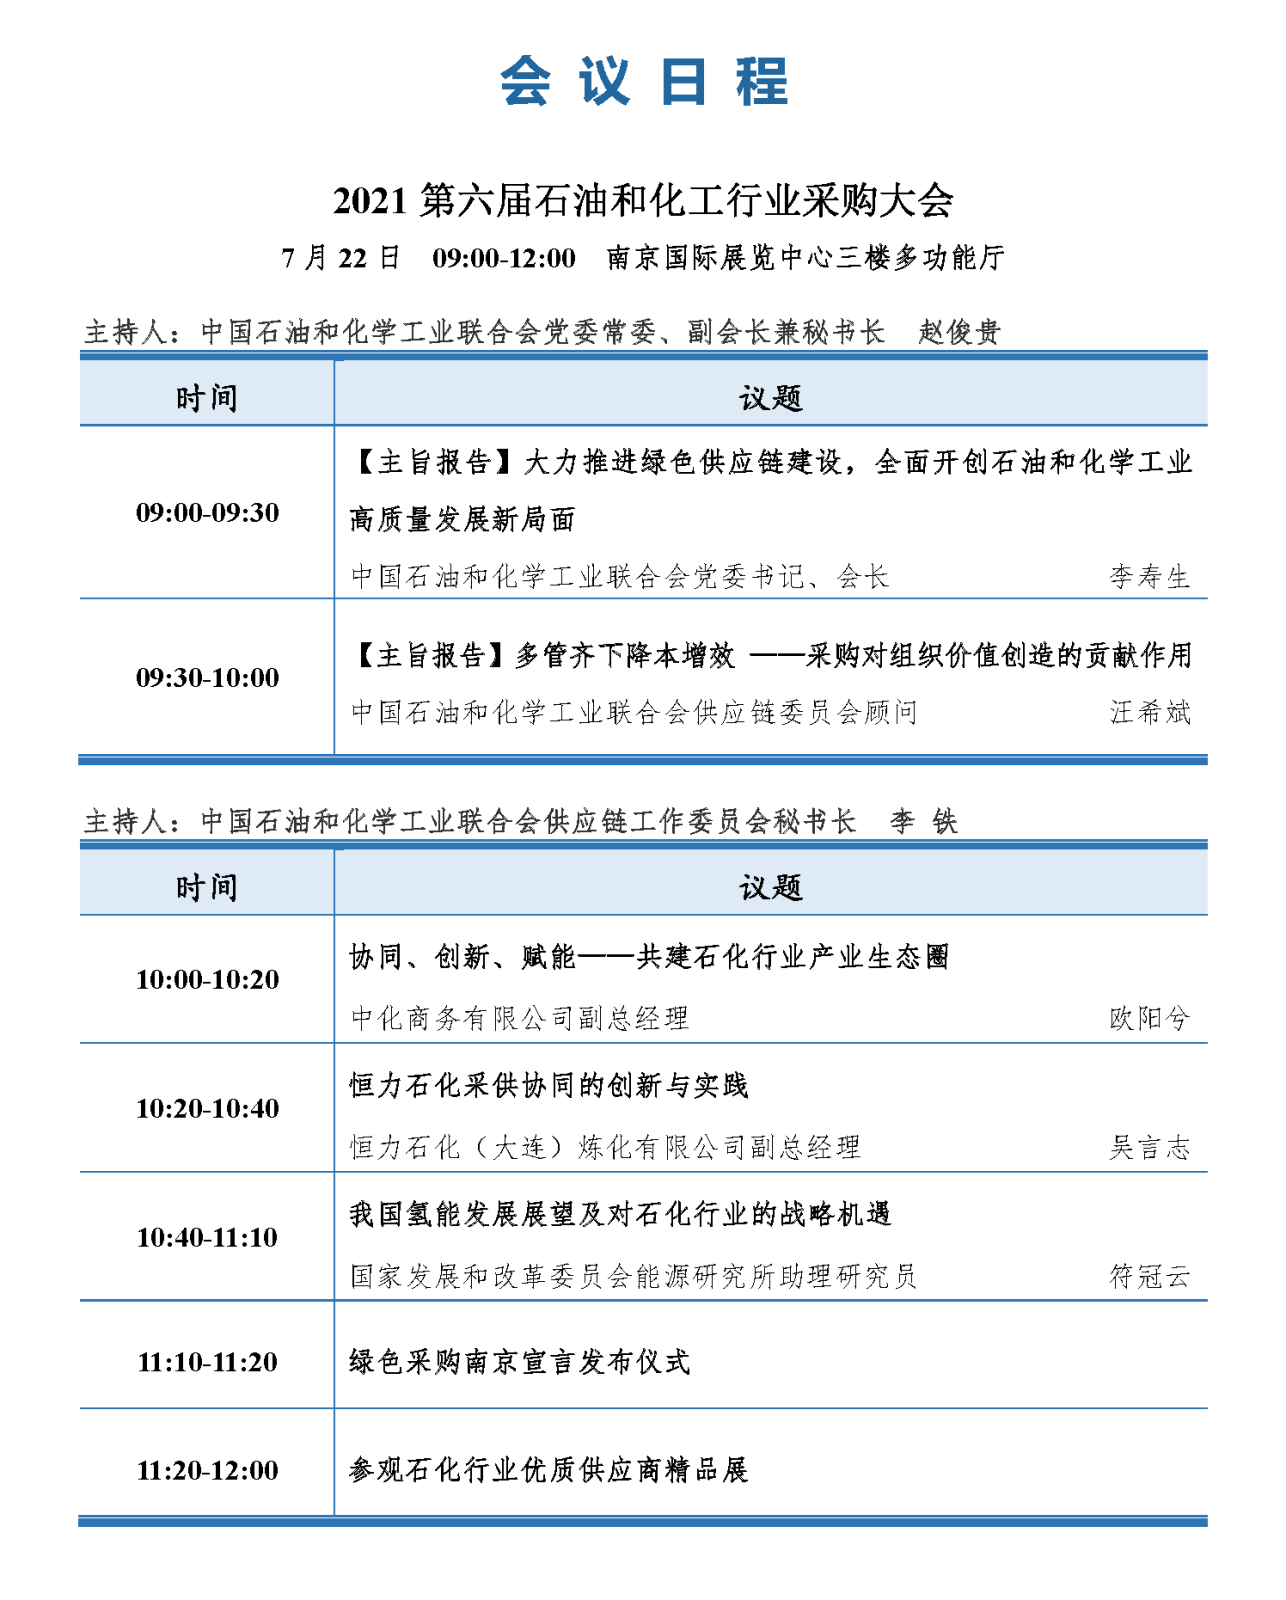 会议手册-2021中国石化行业采购大会_页面_12.png